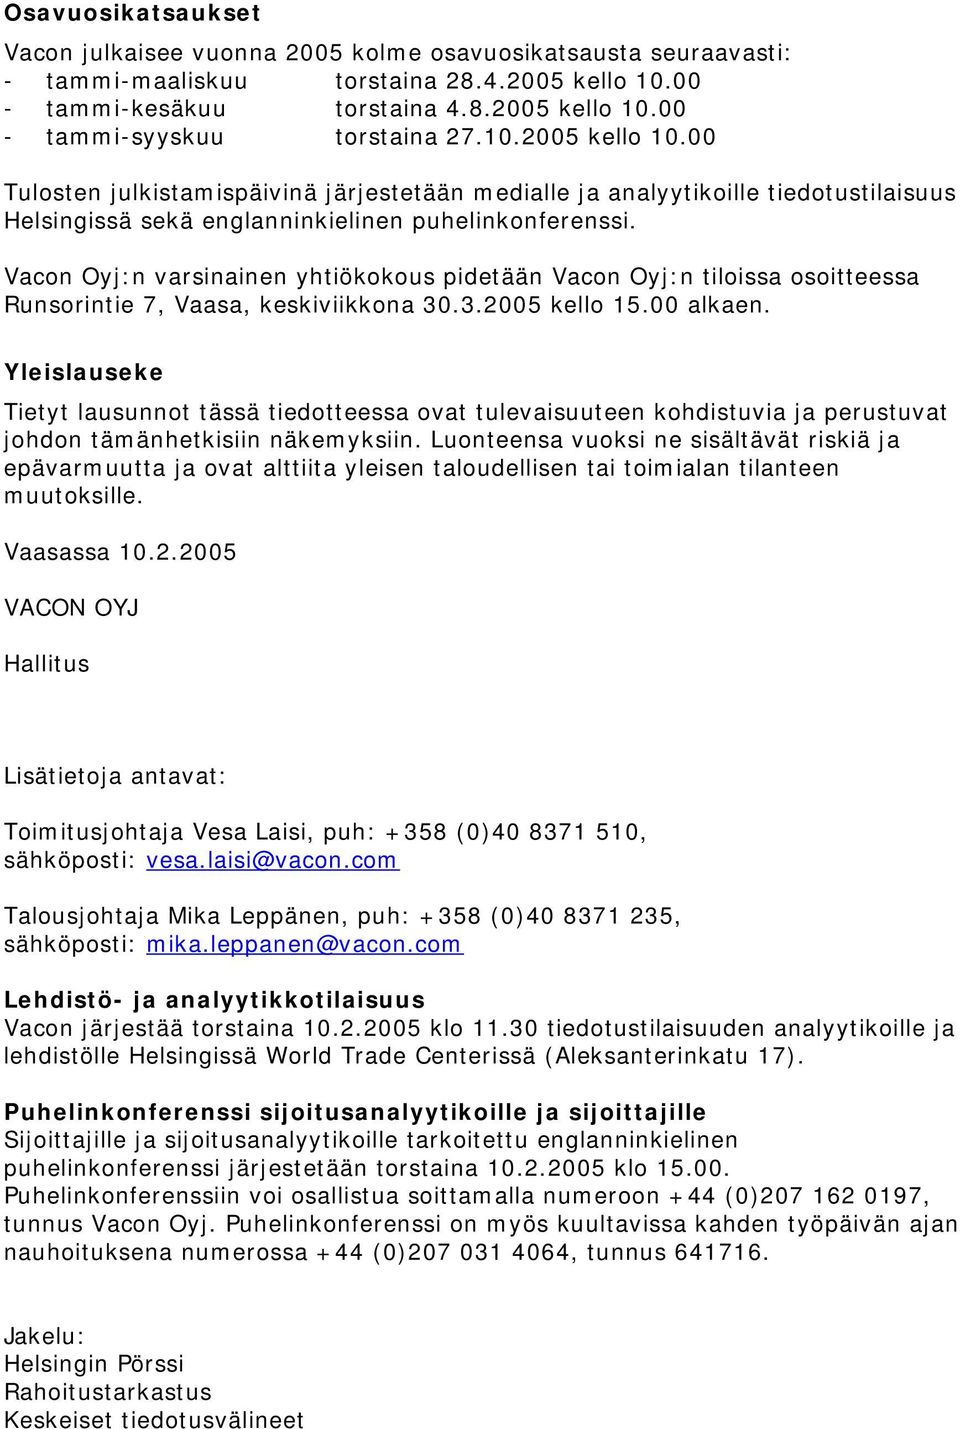 Vacon Oyj:n varsinainen yhtiökokous pidetään Vacon Oyj:n tiloissa osoitteessa Runsorintie 7, Vaasa, keskiviikkona 30.3.2005 kello 15.00 alkaen.